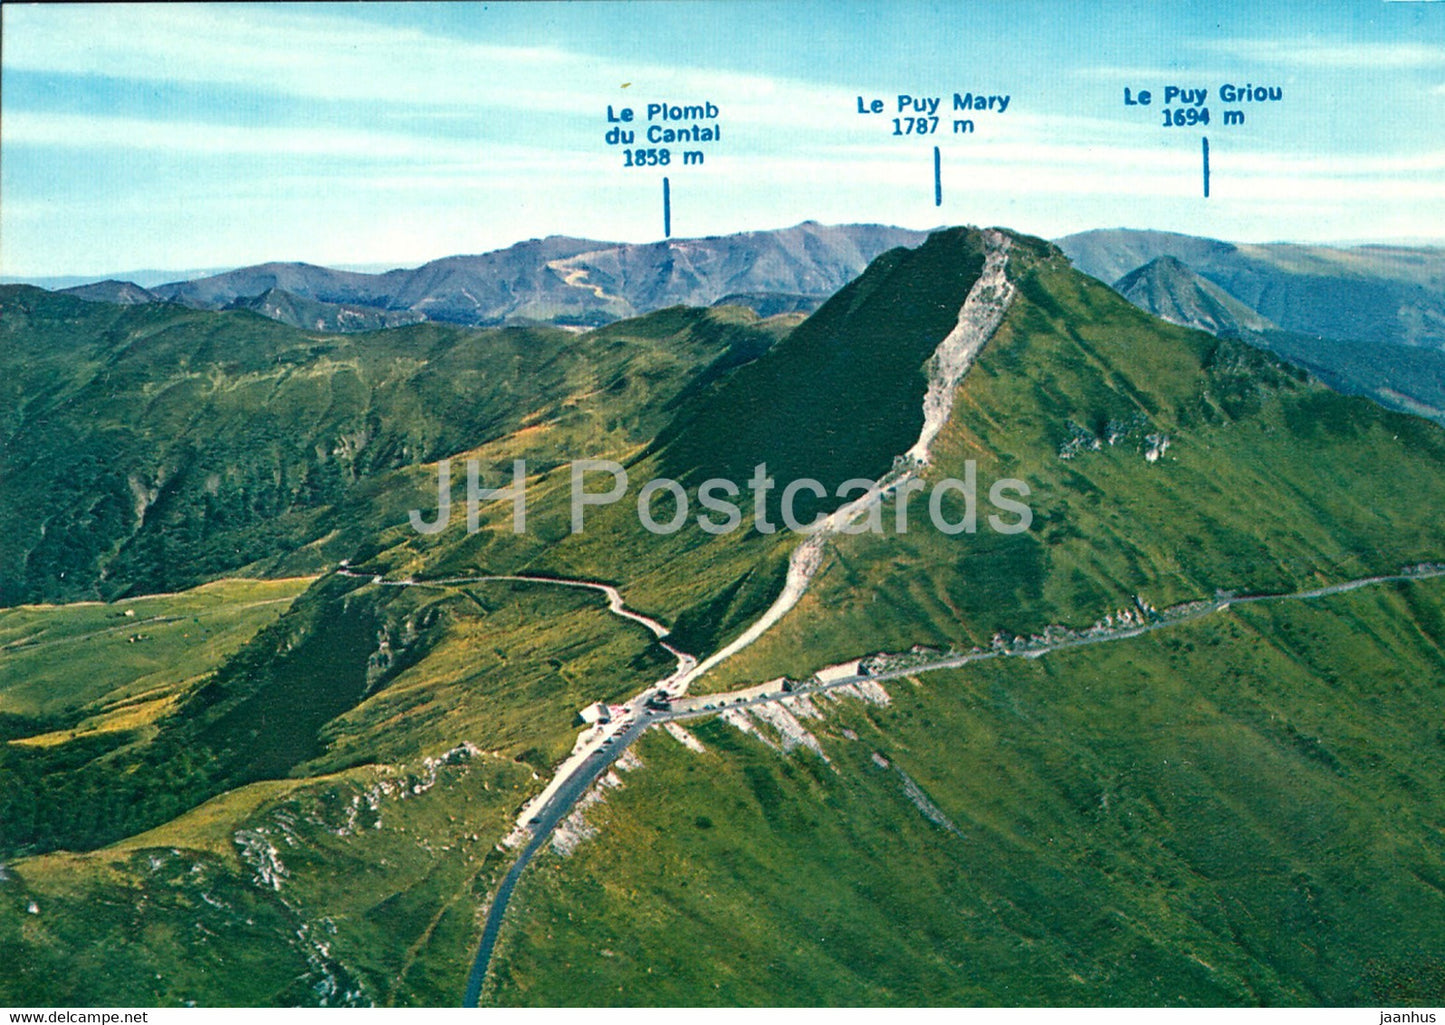 panorama Sur le Puy Mary - Le Puy Griou et le Plomb du Cantal - France - unused - JH Postcards